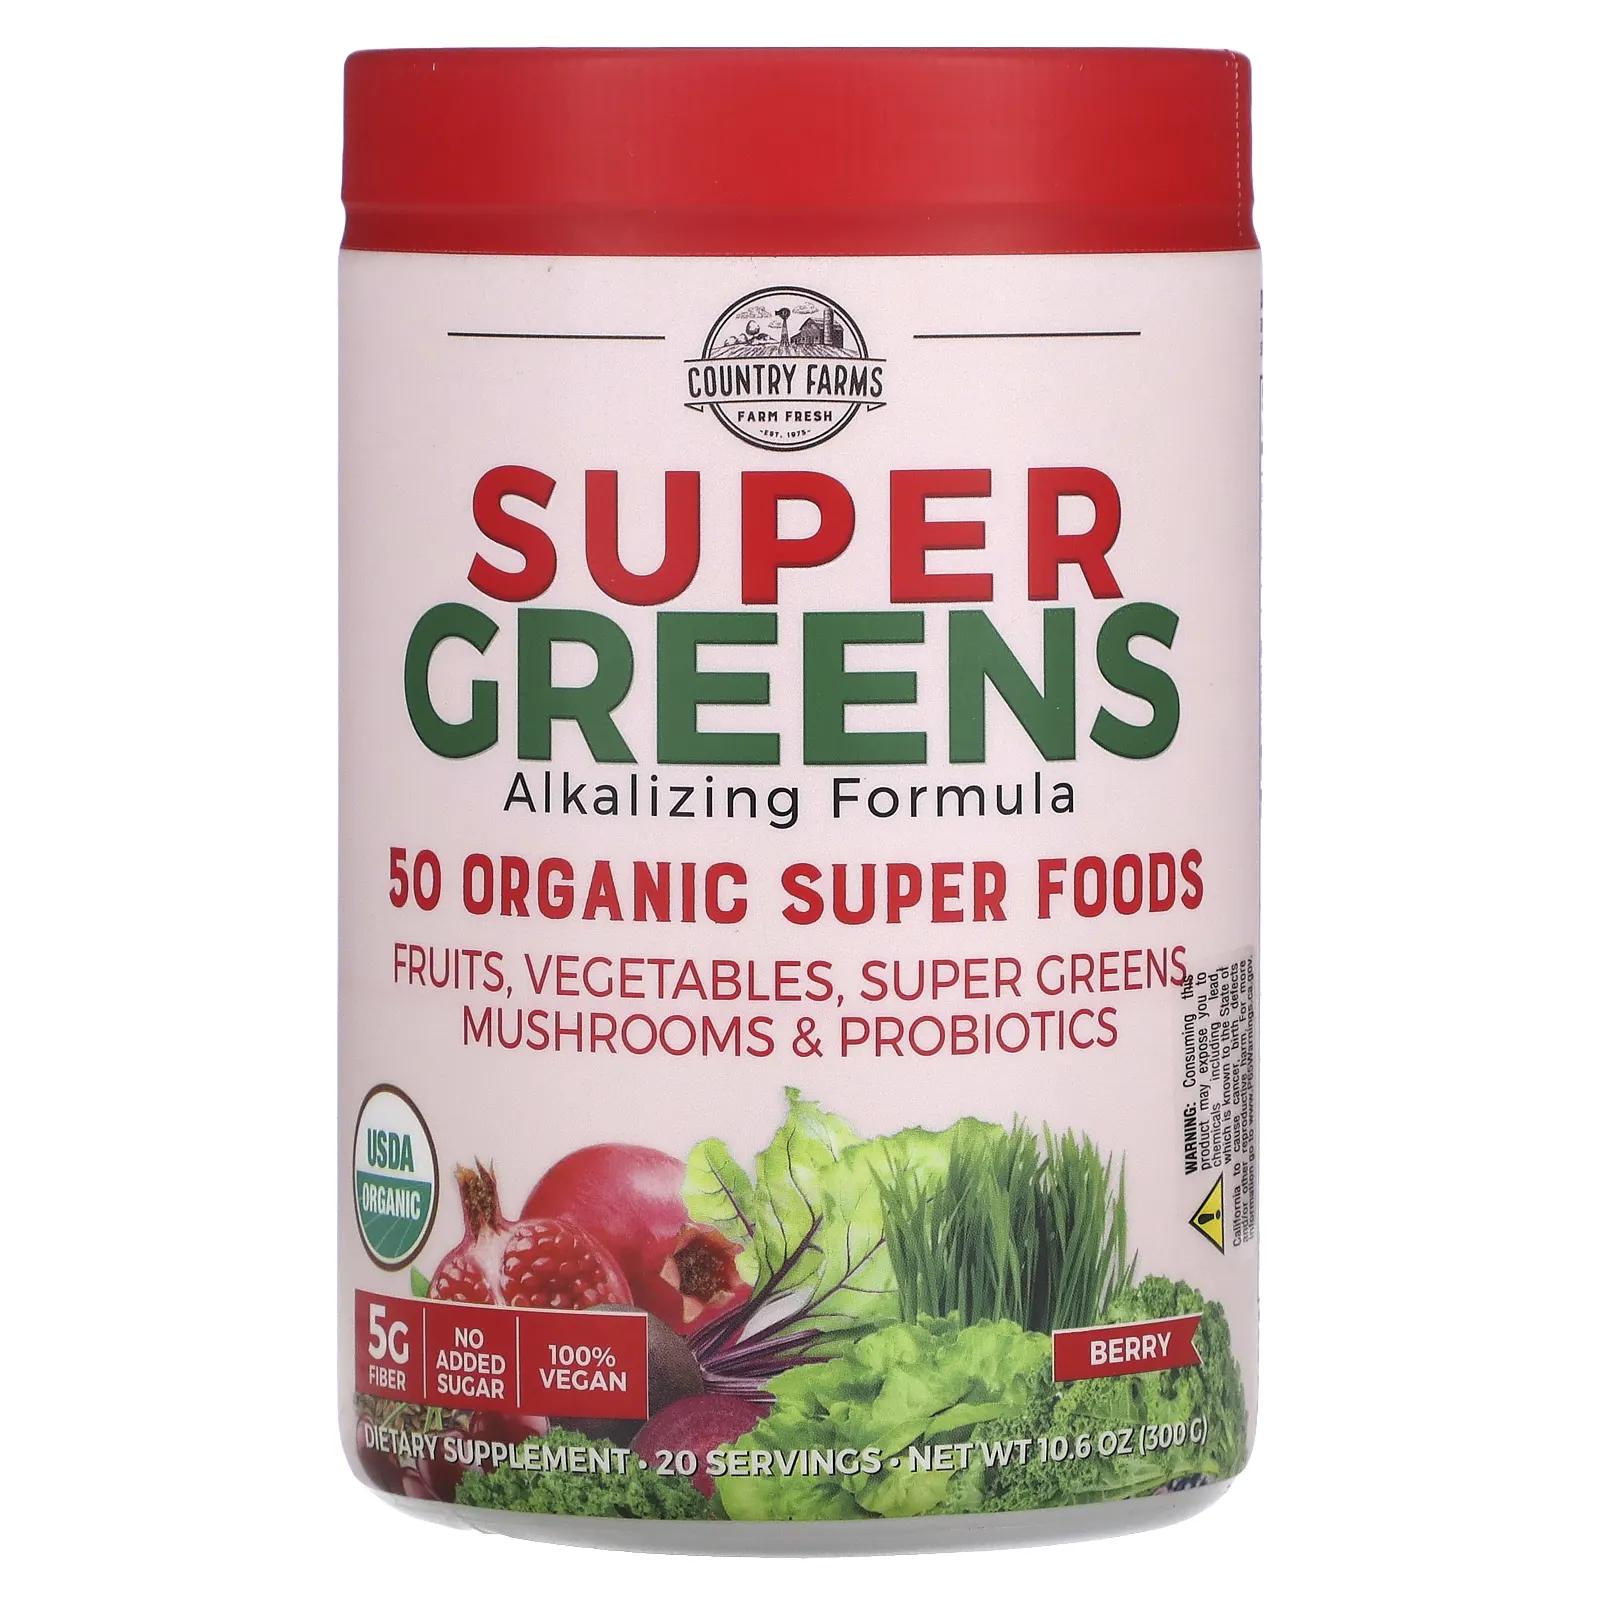 Country Farms Super Greens сертифицированная органическая формула из цельных продуктов вкусный ягодный аромат 10,6 унц. (300 г) country farms super greens формула с подщелачивающими травами с нейтральным вкусом 300 г 10 6 унции